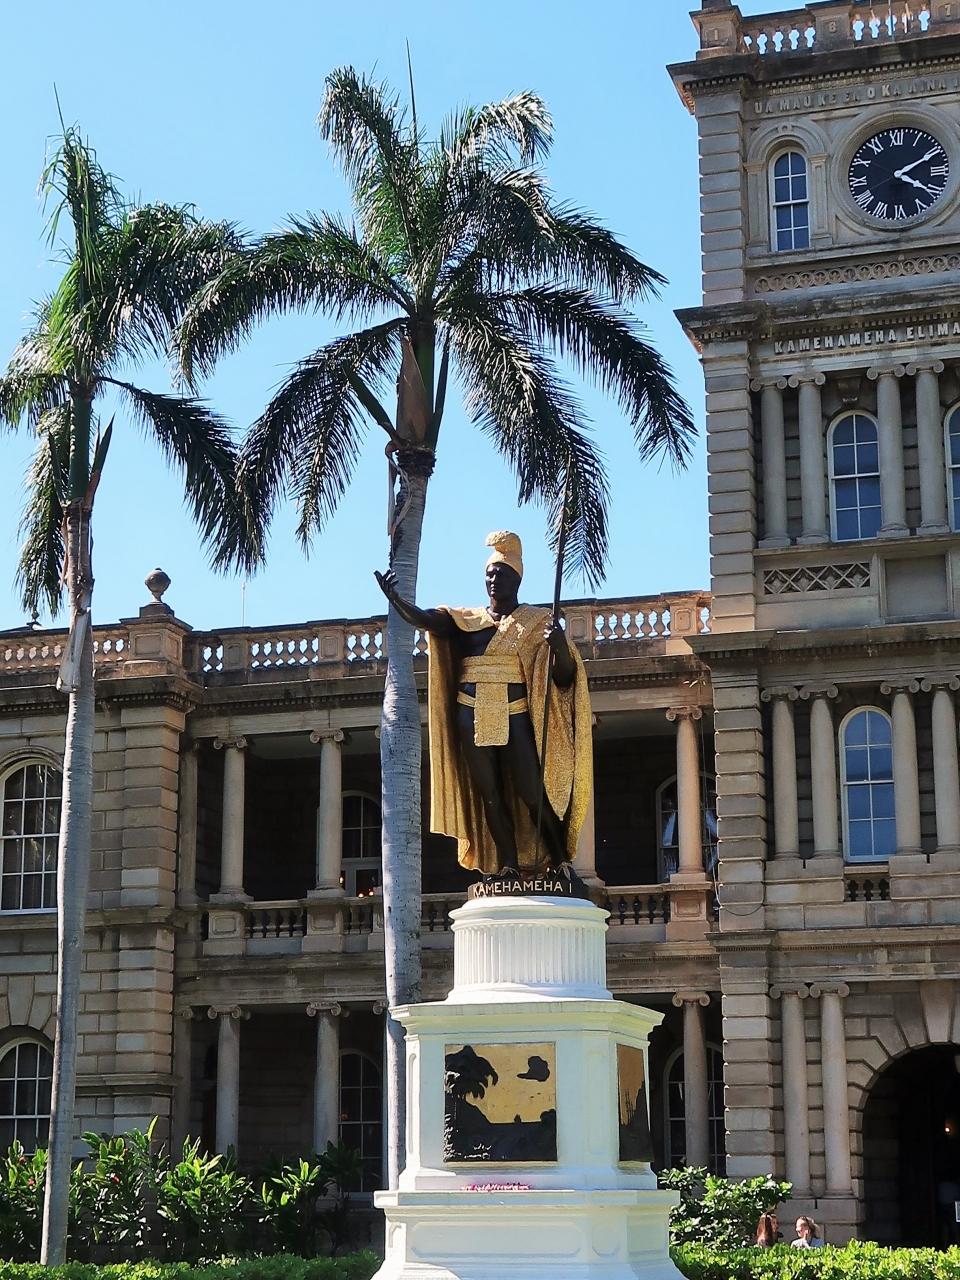 Oahu 3 カメハメハ1世 像 イオラニ宮殿の前で 記念写真の人気スポット ホノルル ハワイ の旅行記 ブログ By マキタンさん フォートラベル